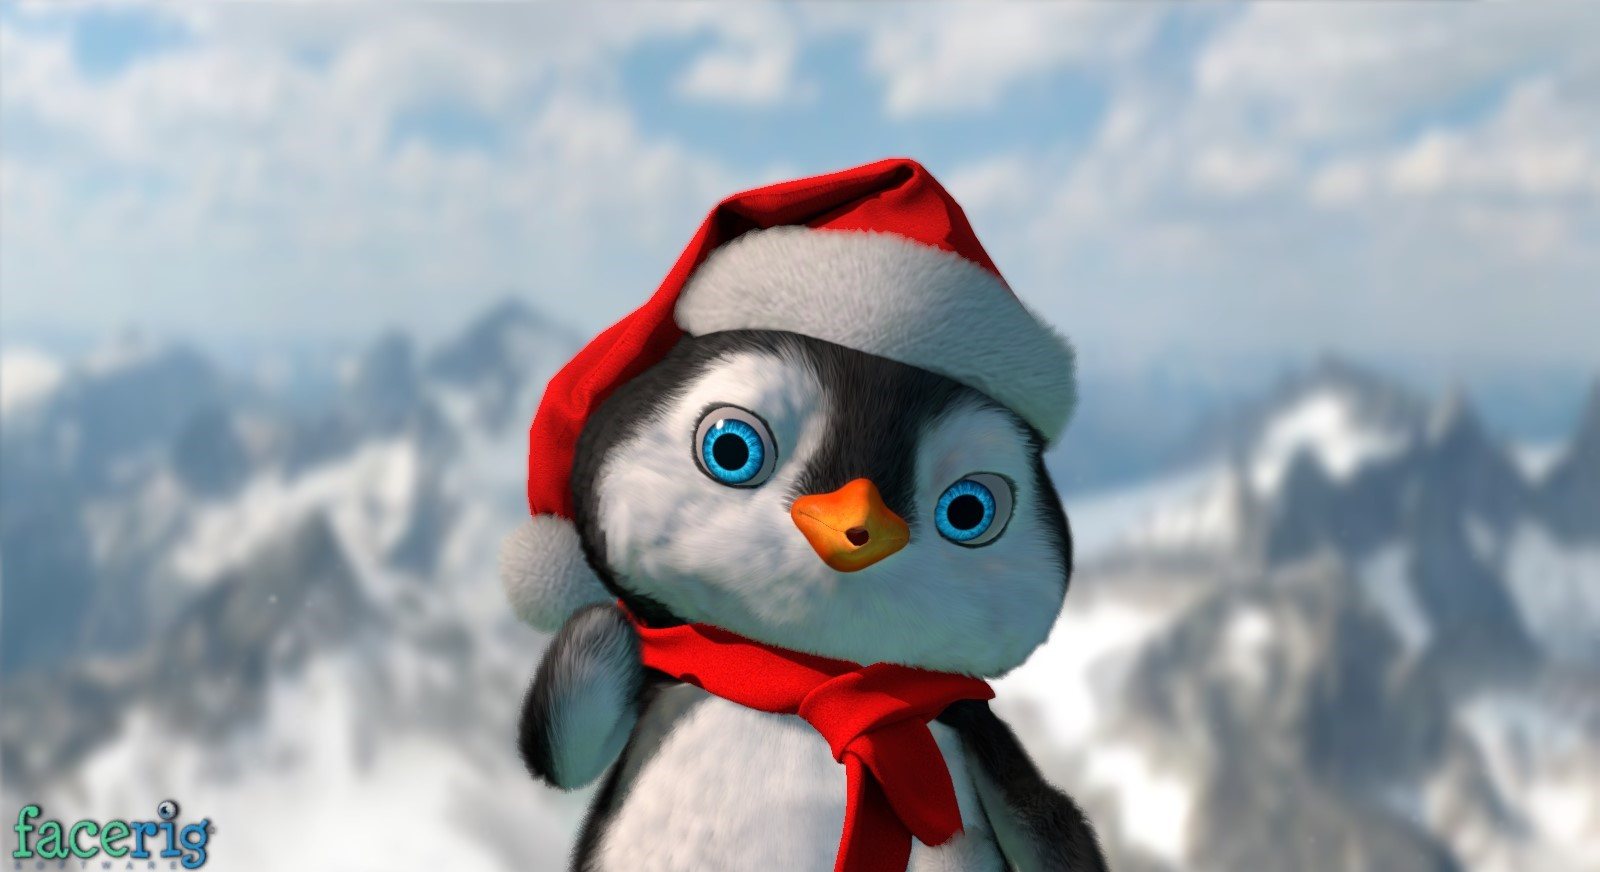 FaceRig - Winter Holidays Avatars 2015 DLC Steam CD Key 2.71 $